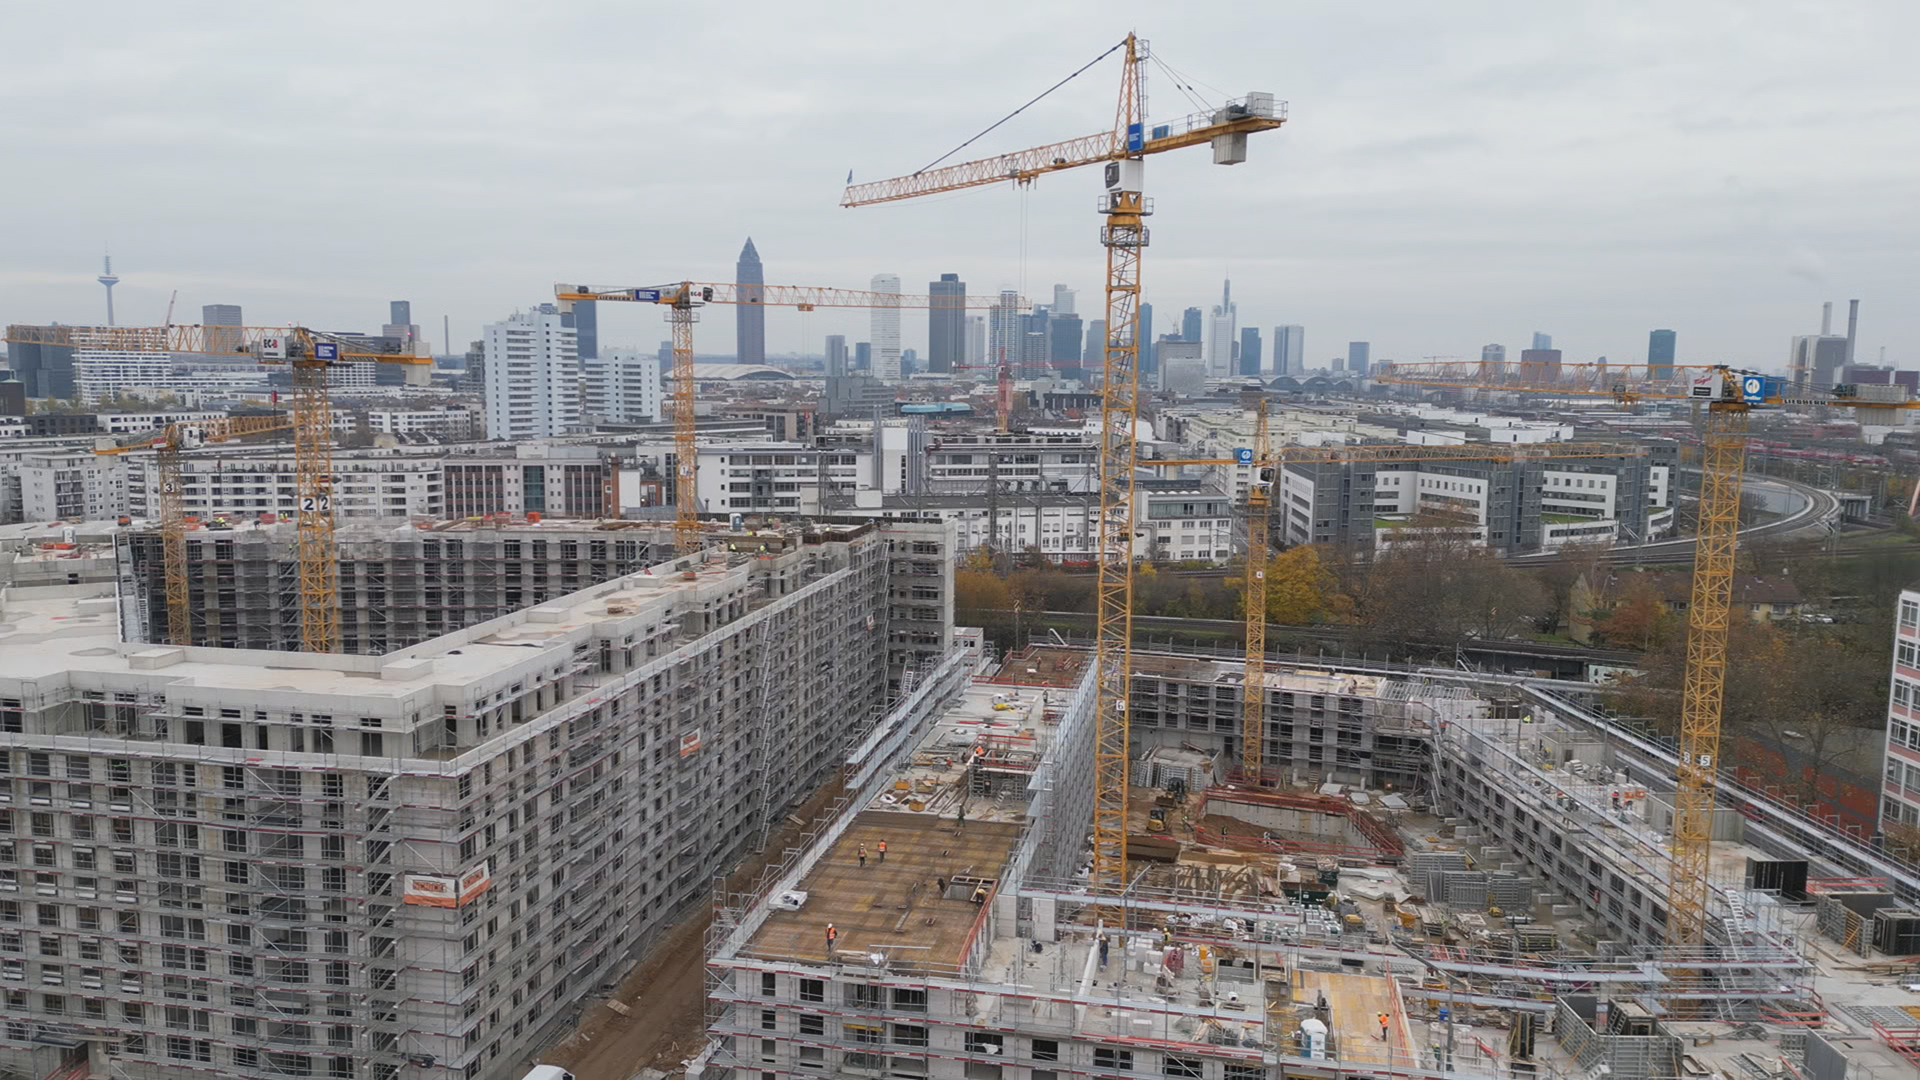 Blick auf den Bau eines Telehouse-Rechenzentrums und ein Neubaugebiet in Frankfurt am Main. | hr